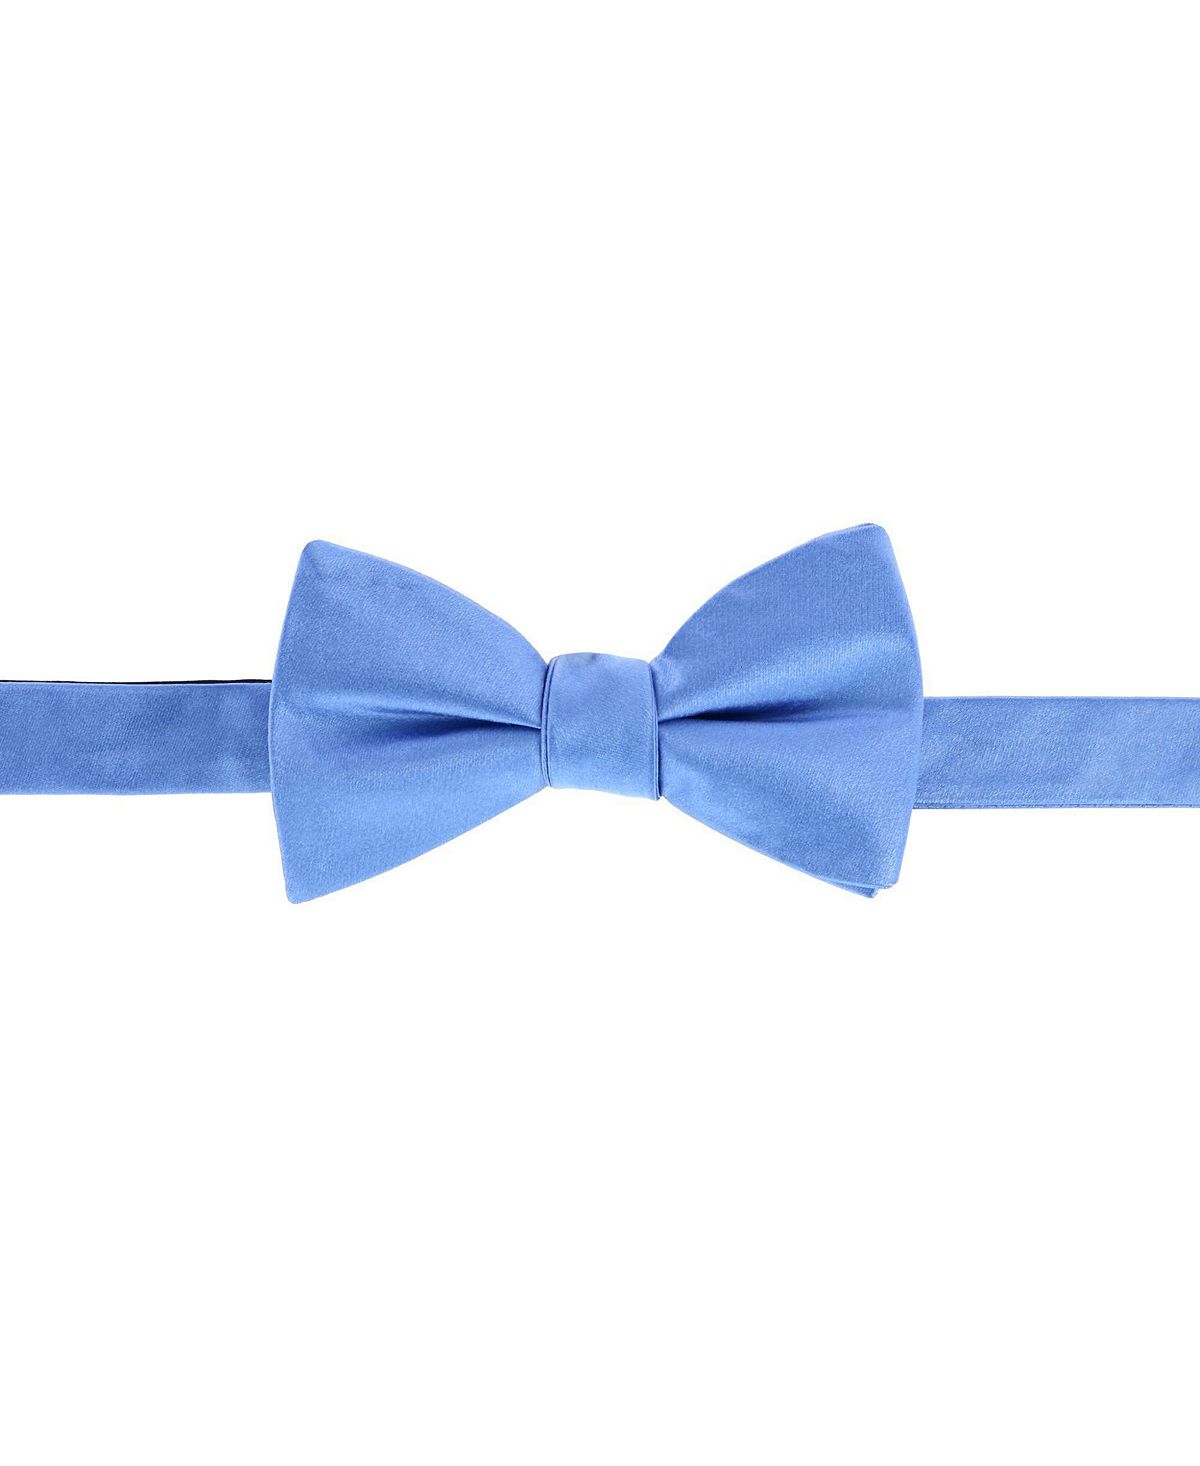 большой галстук бабочка однотонный галстук бабочка для женщин униформа воротник бабочка женский галстук бабочка галстук бабочка для вз Однотонный шелковый галстук-бабочка Sutton TRAFALGAR